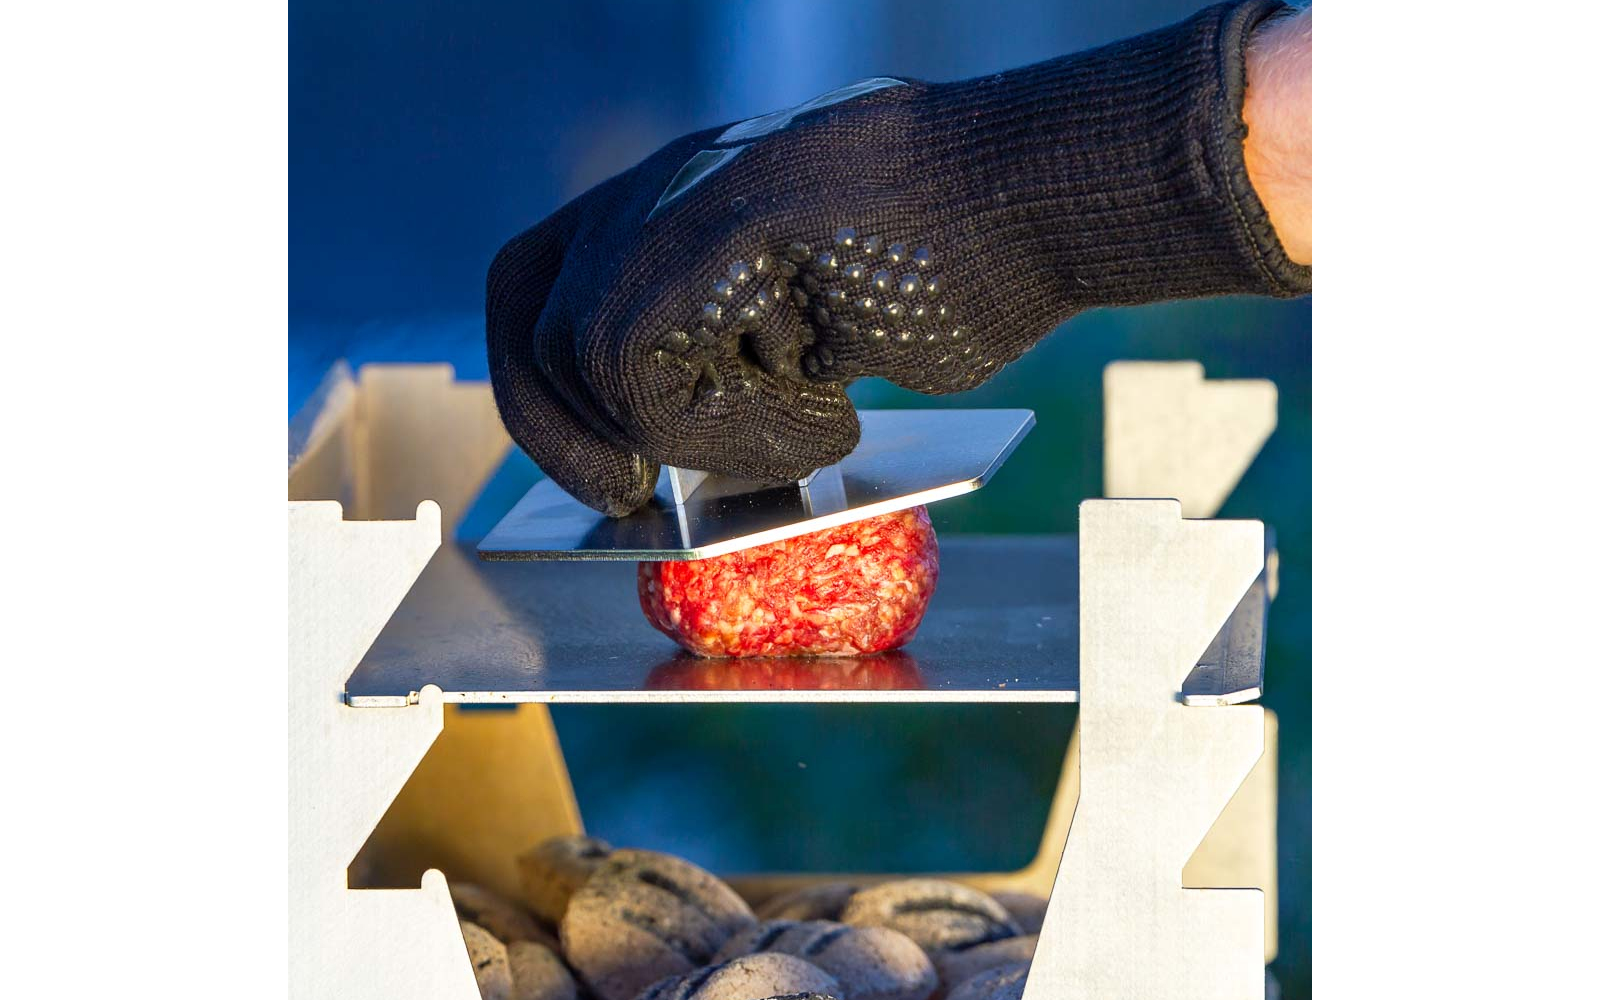 Schwarzer Grillhandschuh hält 6-eckige Hamburger Presse aus Edelstahl und presst einen Burger Patty auf der Plancha eines Holzkohlegrills.